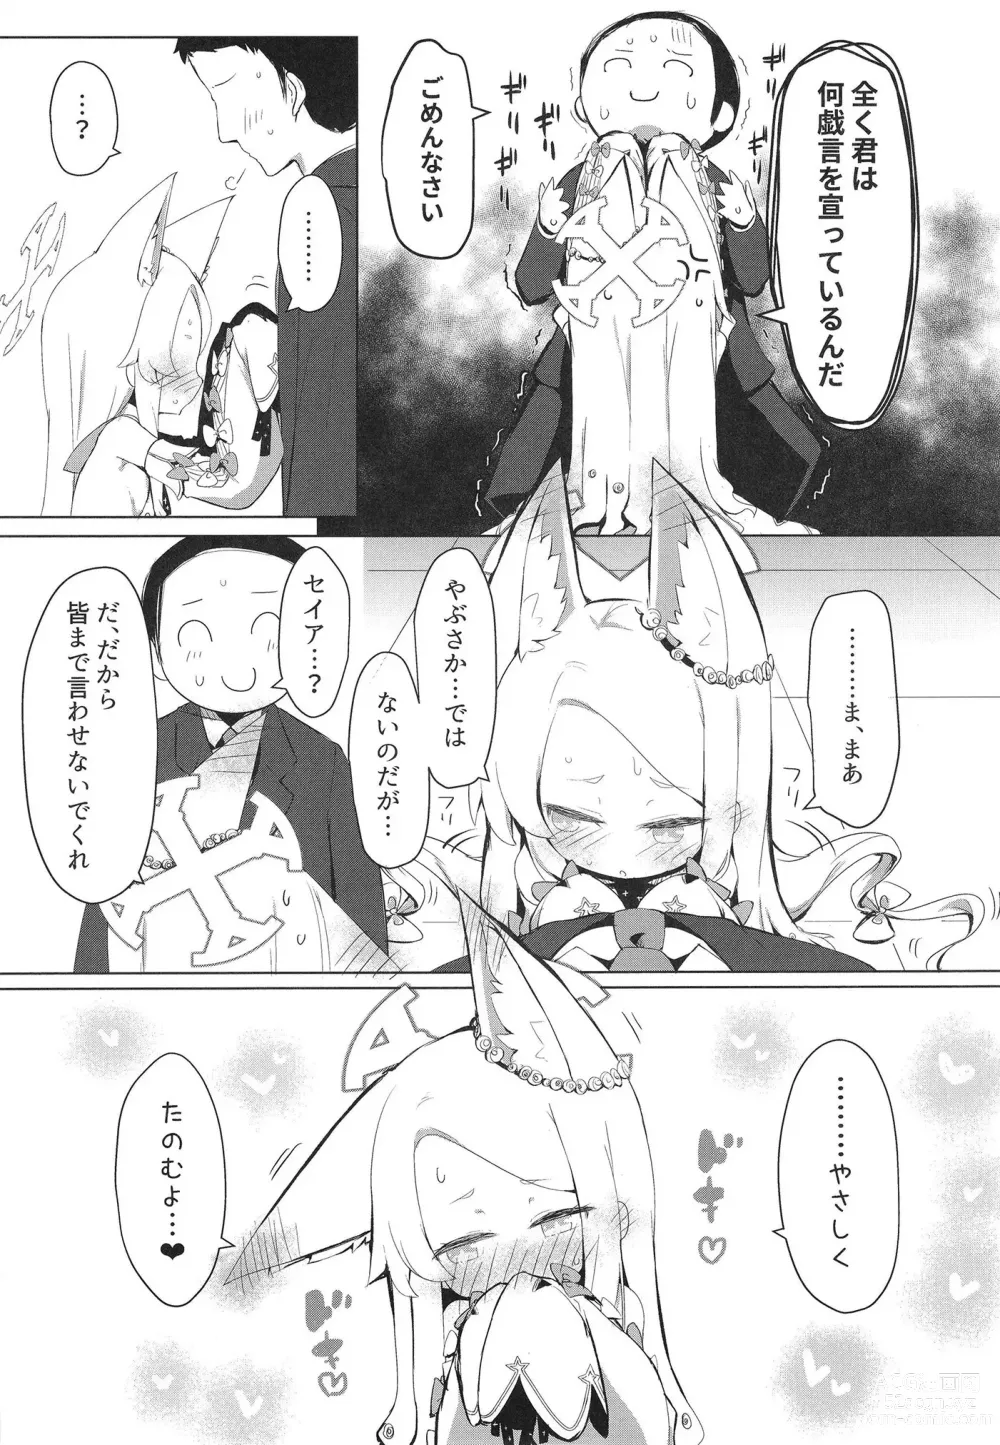 Page 7 of doujinshi Hatsujou Seia de sumanai